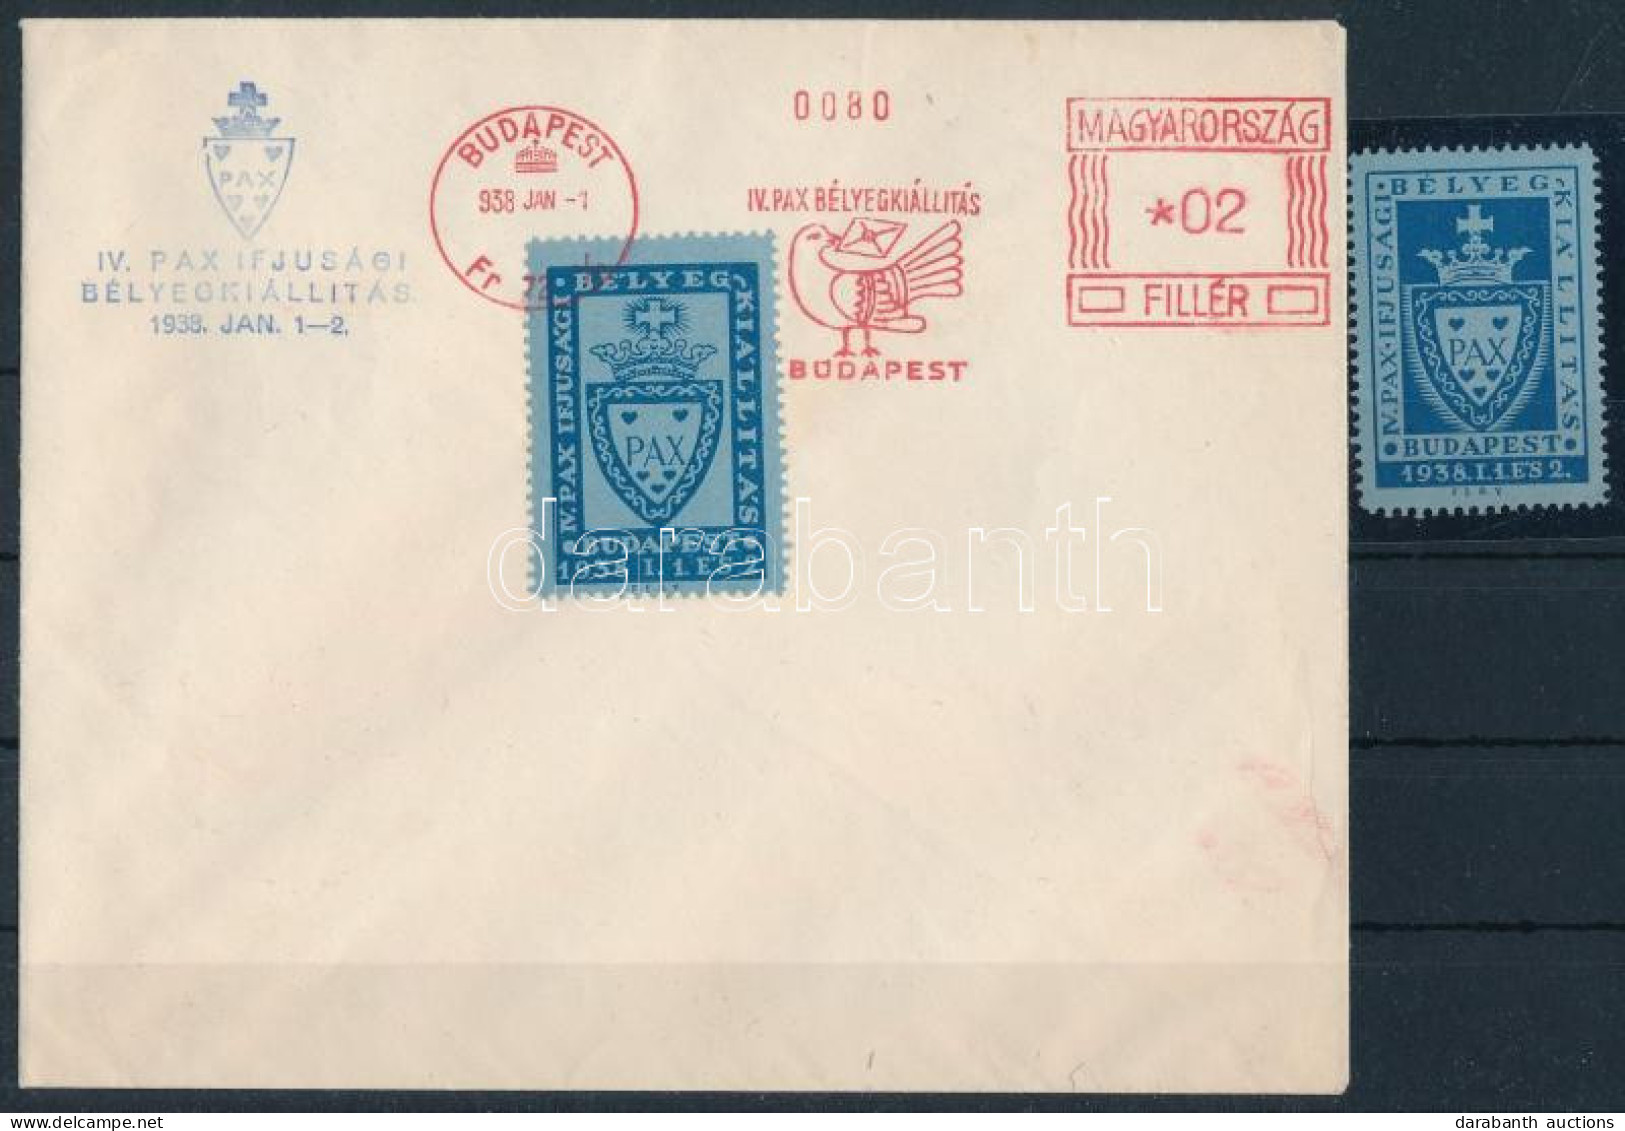 1938 IV. PAX Ifjúsági Bélyegkiállítás Levélzáró + Borítékon Frankotyp Emlékbélyegzéssel / Label + On Cover - Unclassified